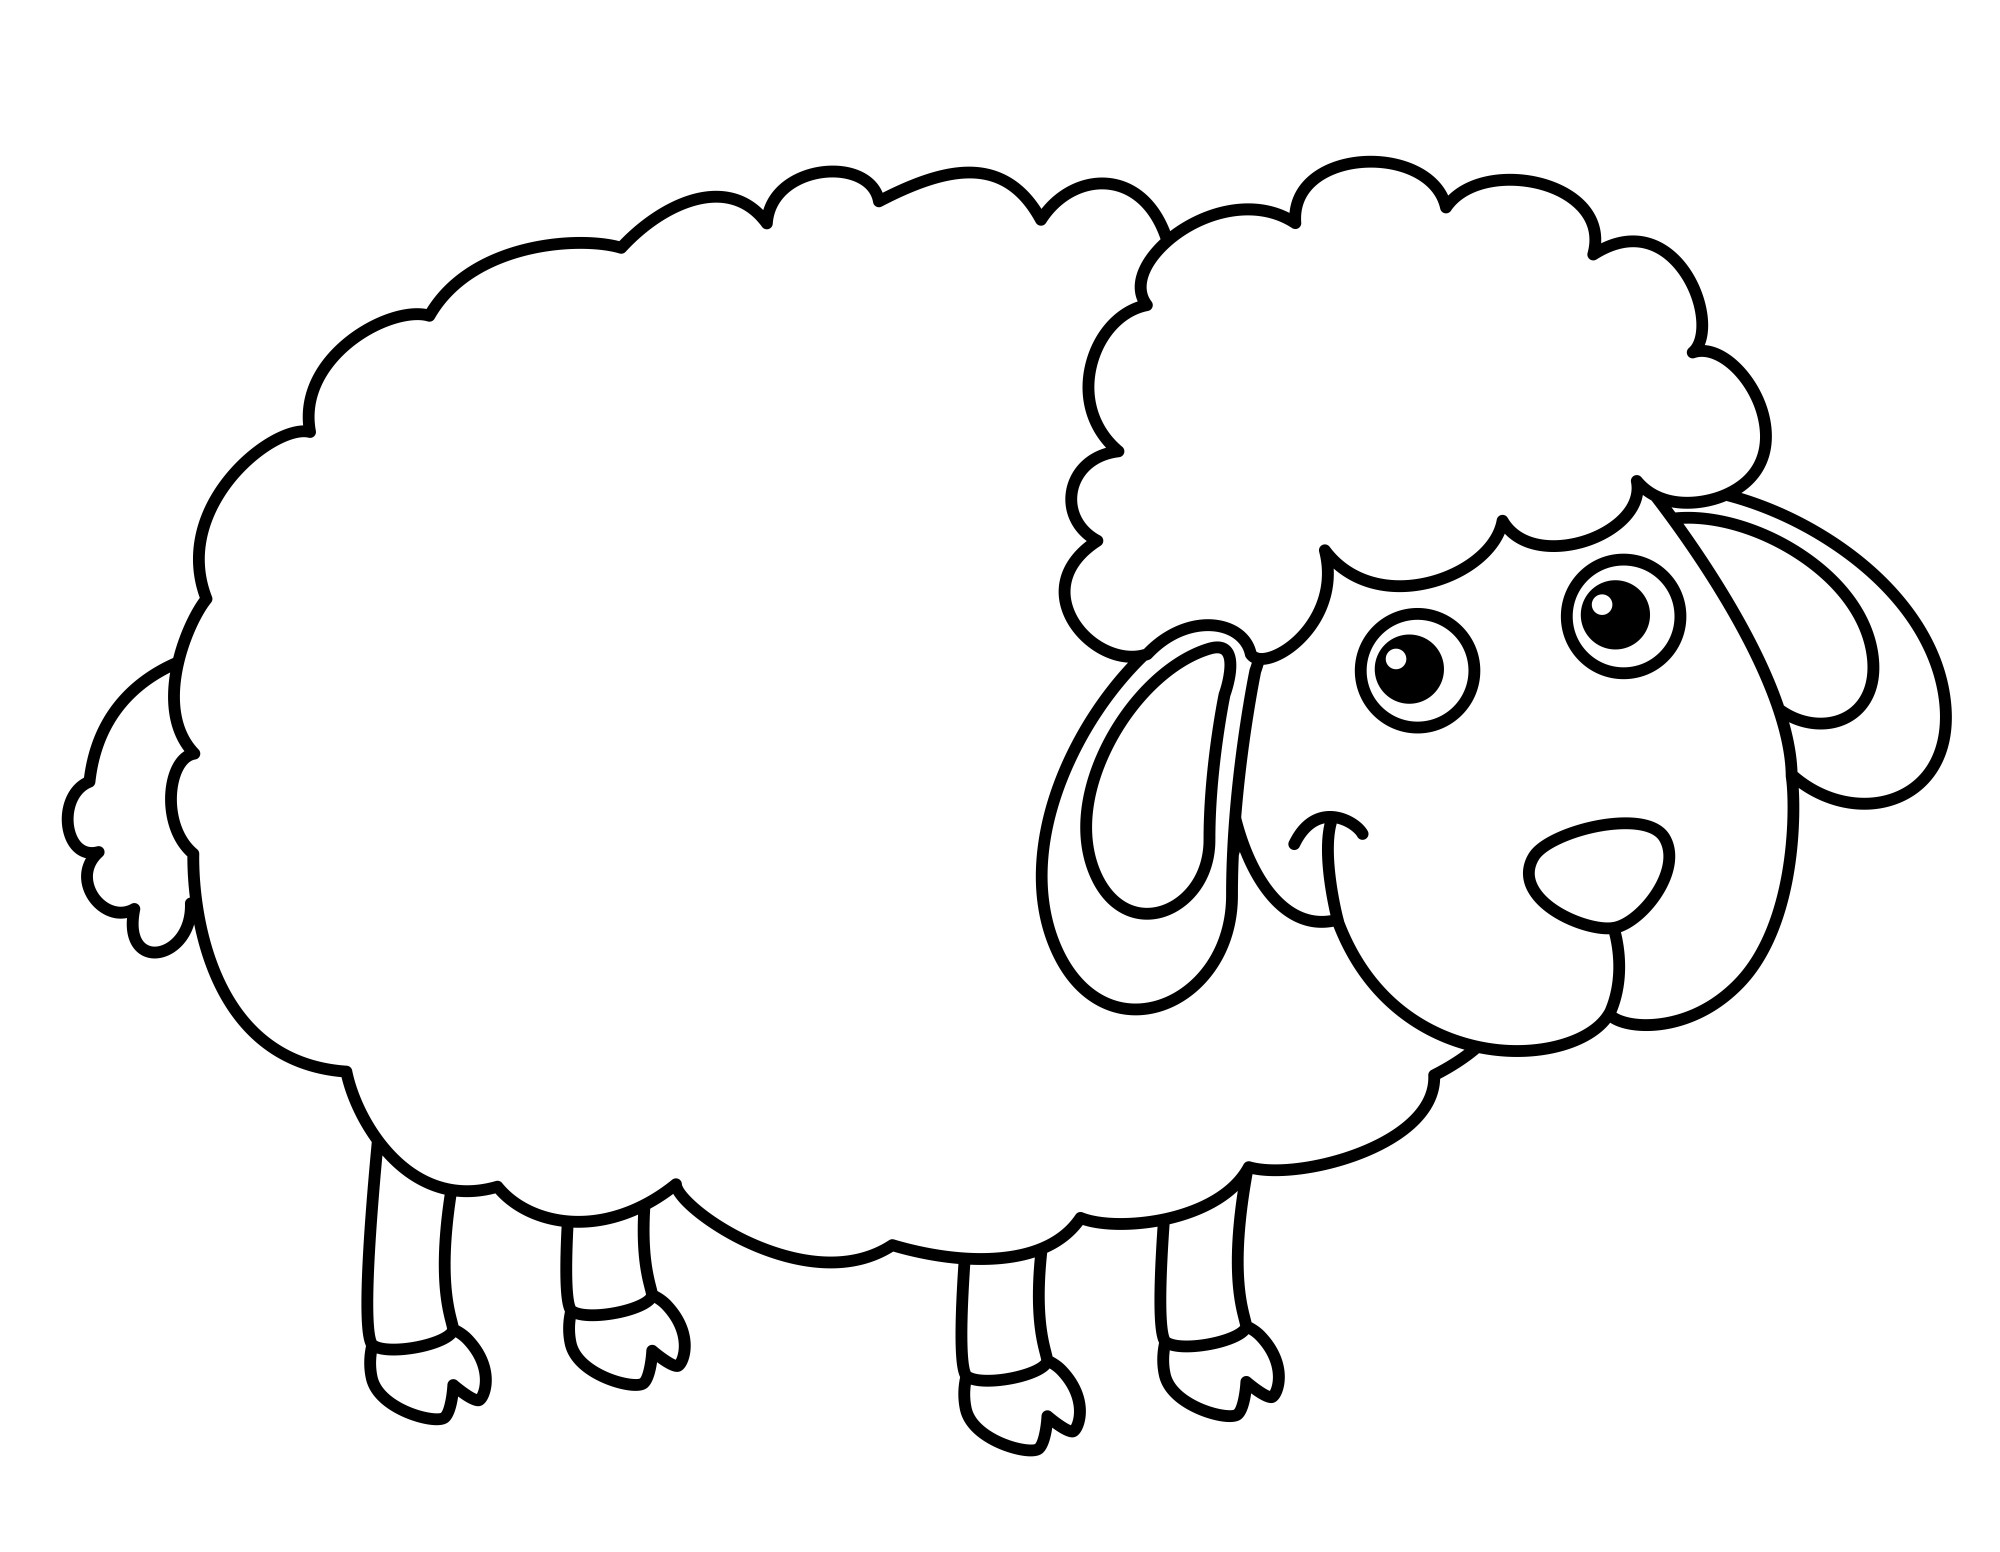 Раскраска для детей: звездная овечка